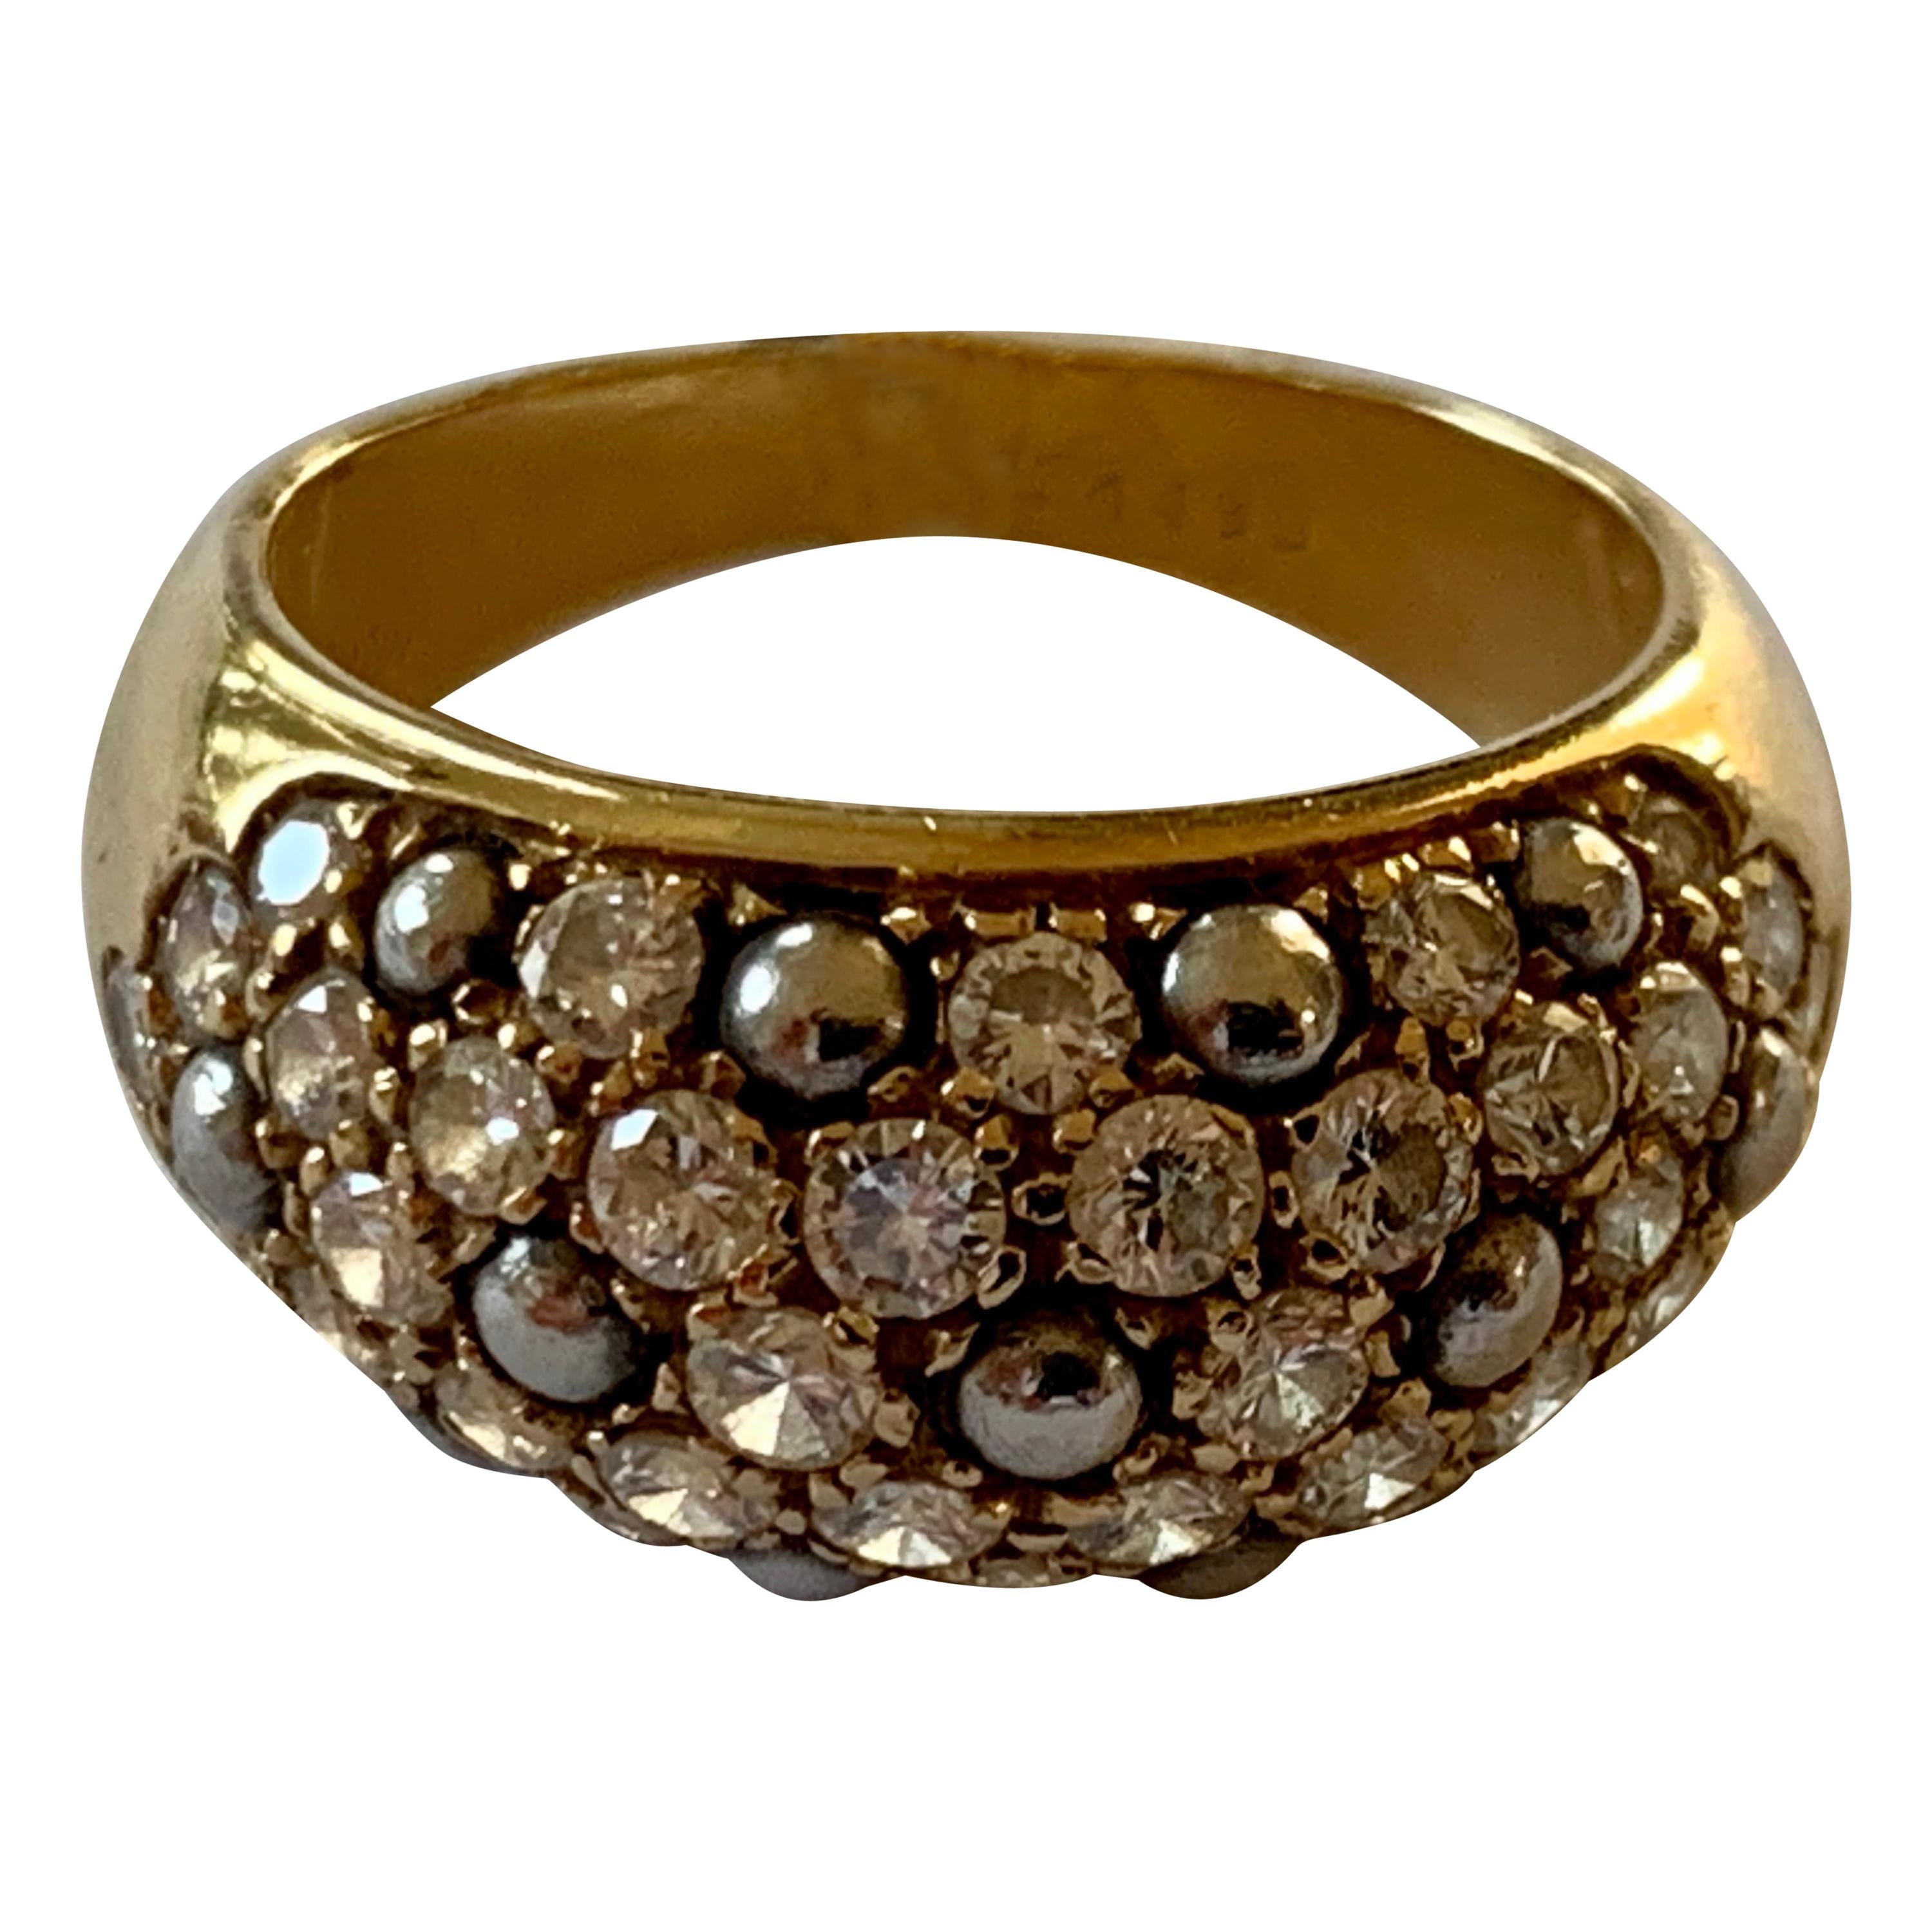 Vintage Cartier Ring 18 Karat Yellow Gold Diamond Pave Band Ring